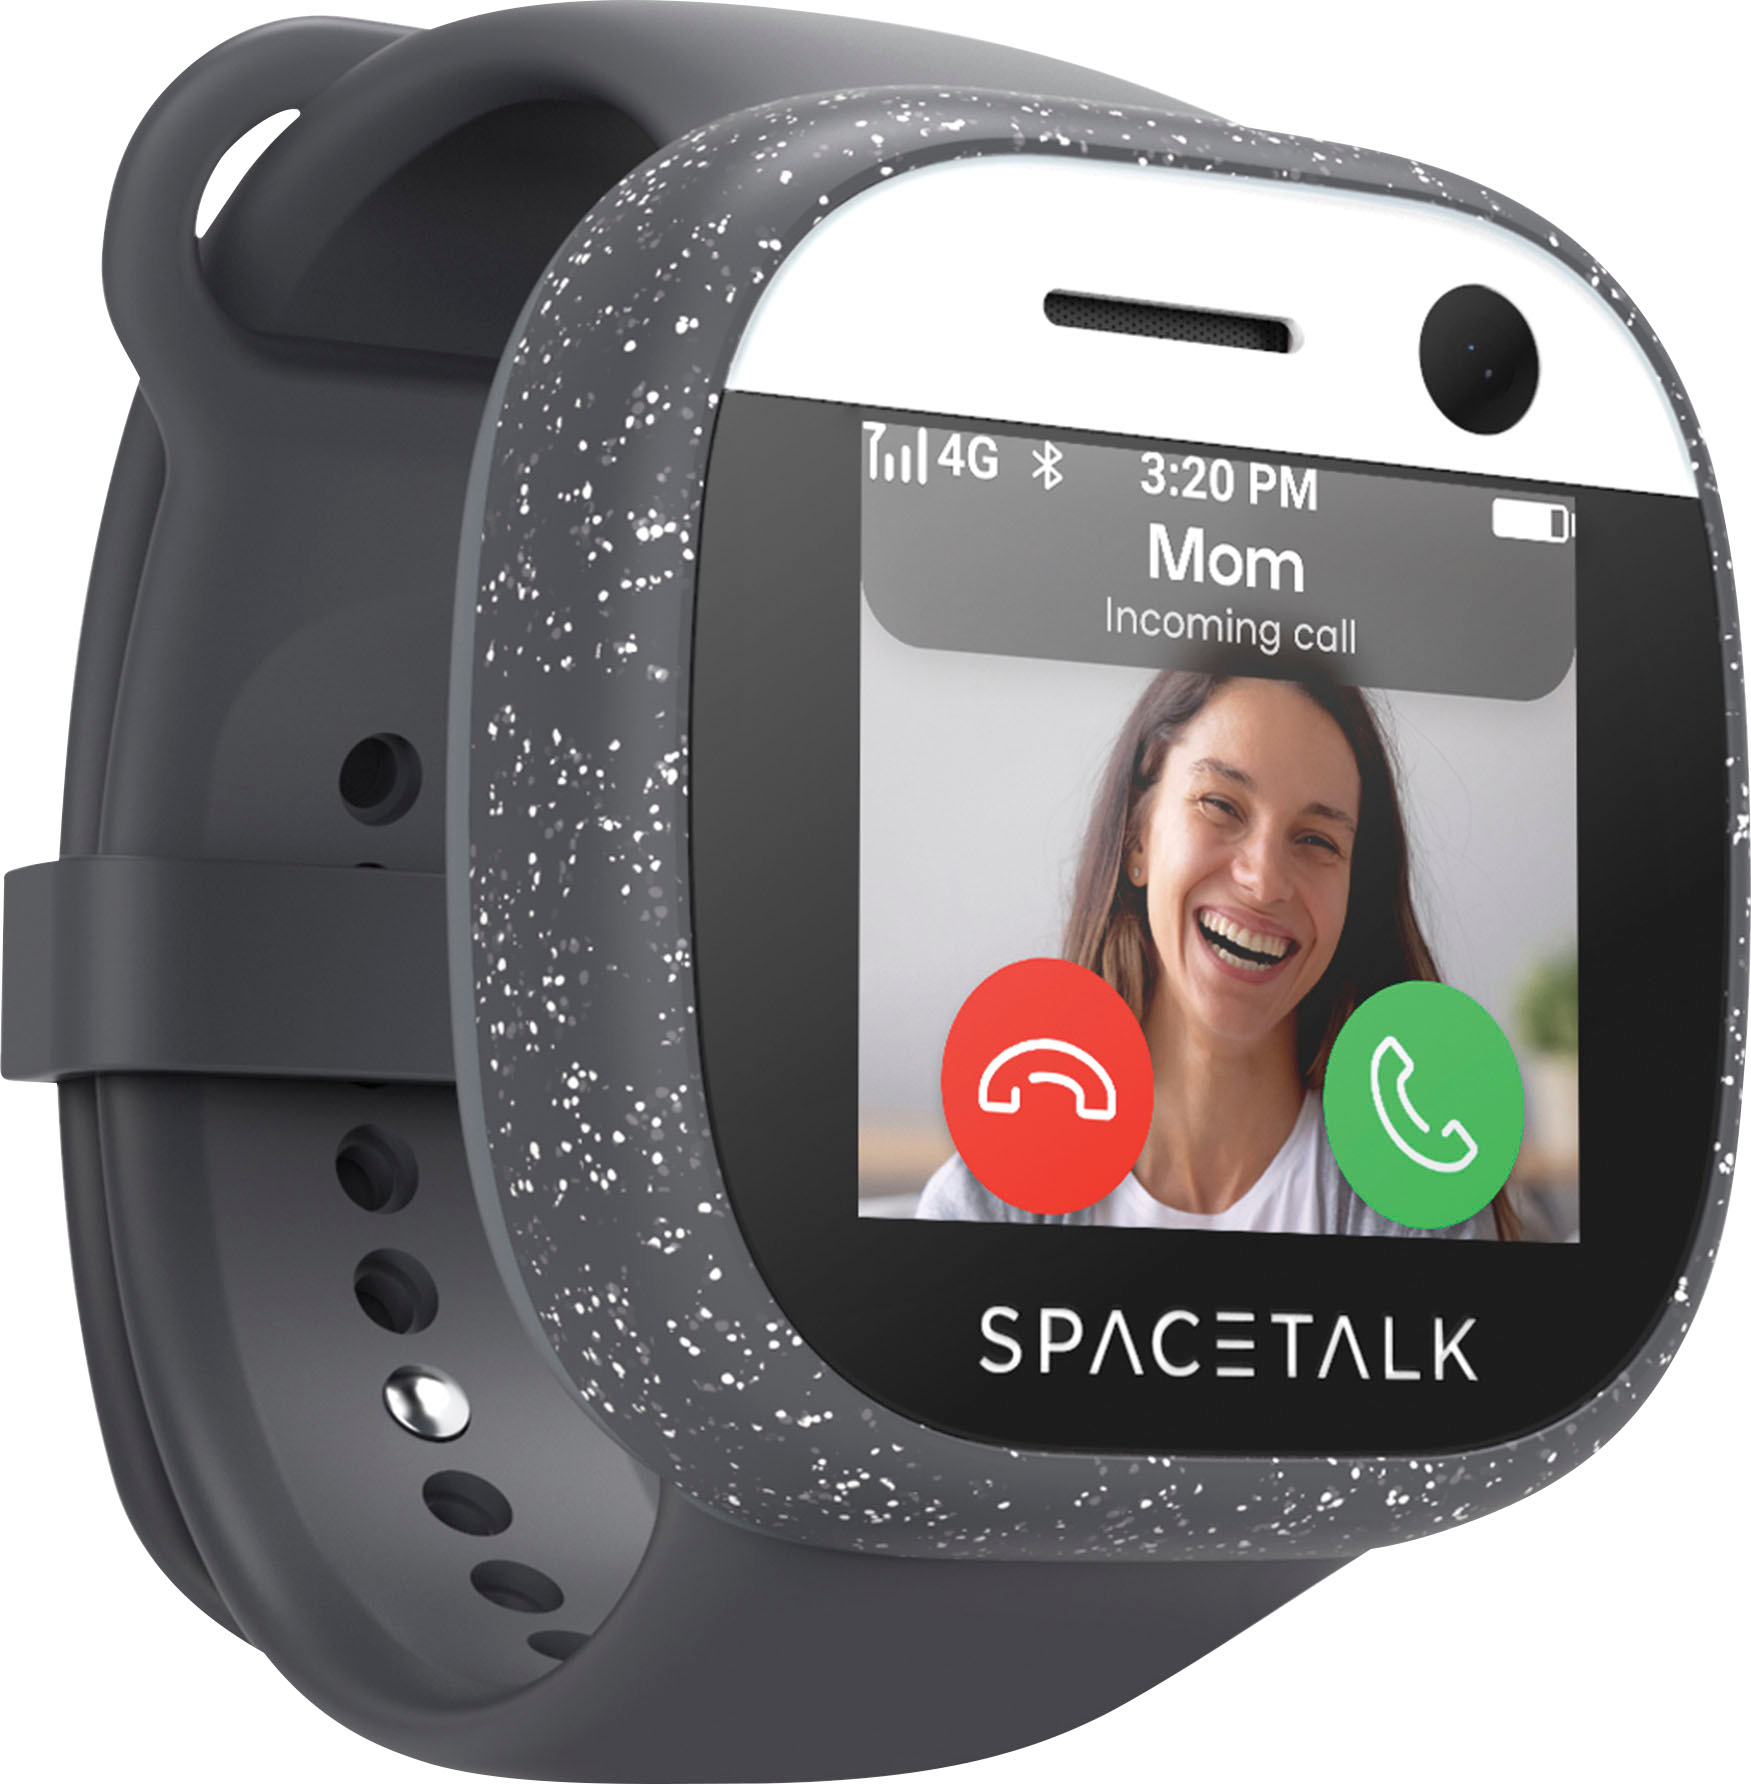 Spacetalk Adventurer 4G Kids Smart Phone GPS Tracker ST2-MN-2 - Best